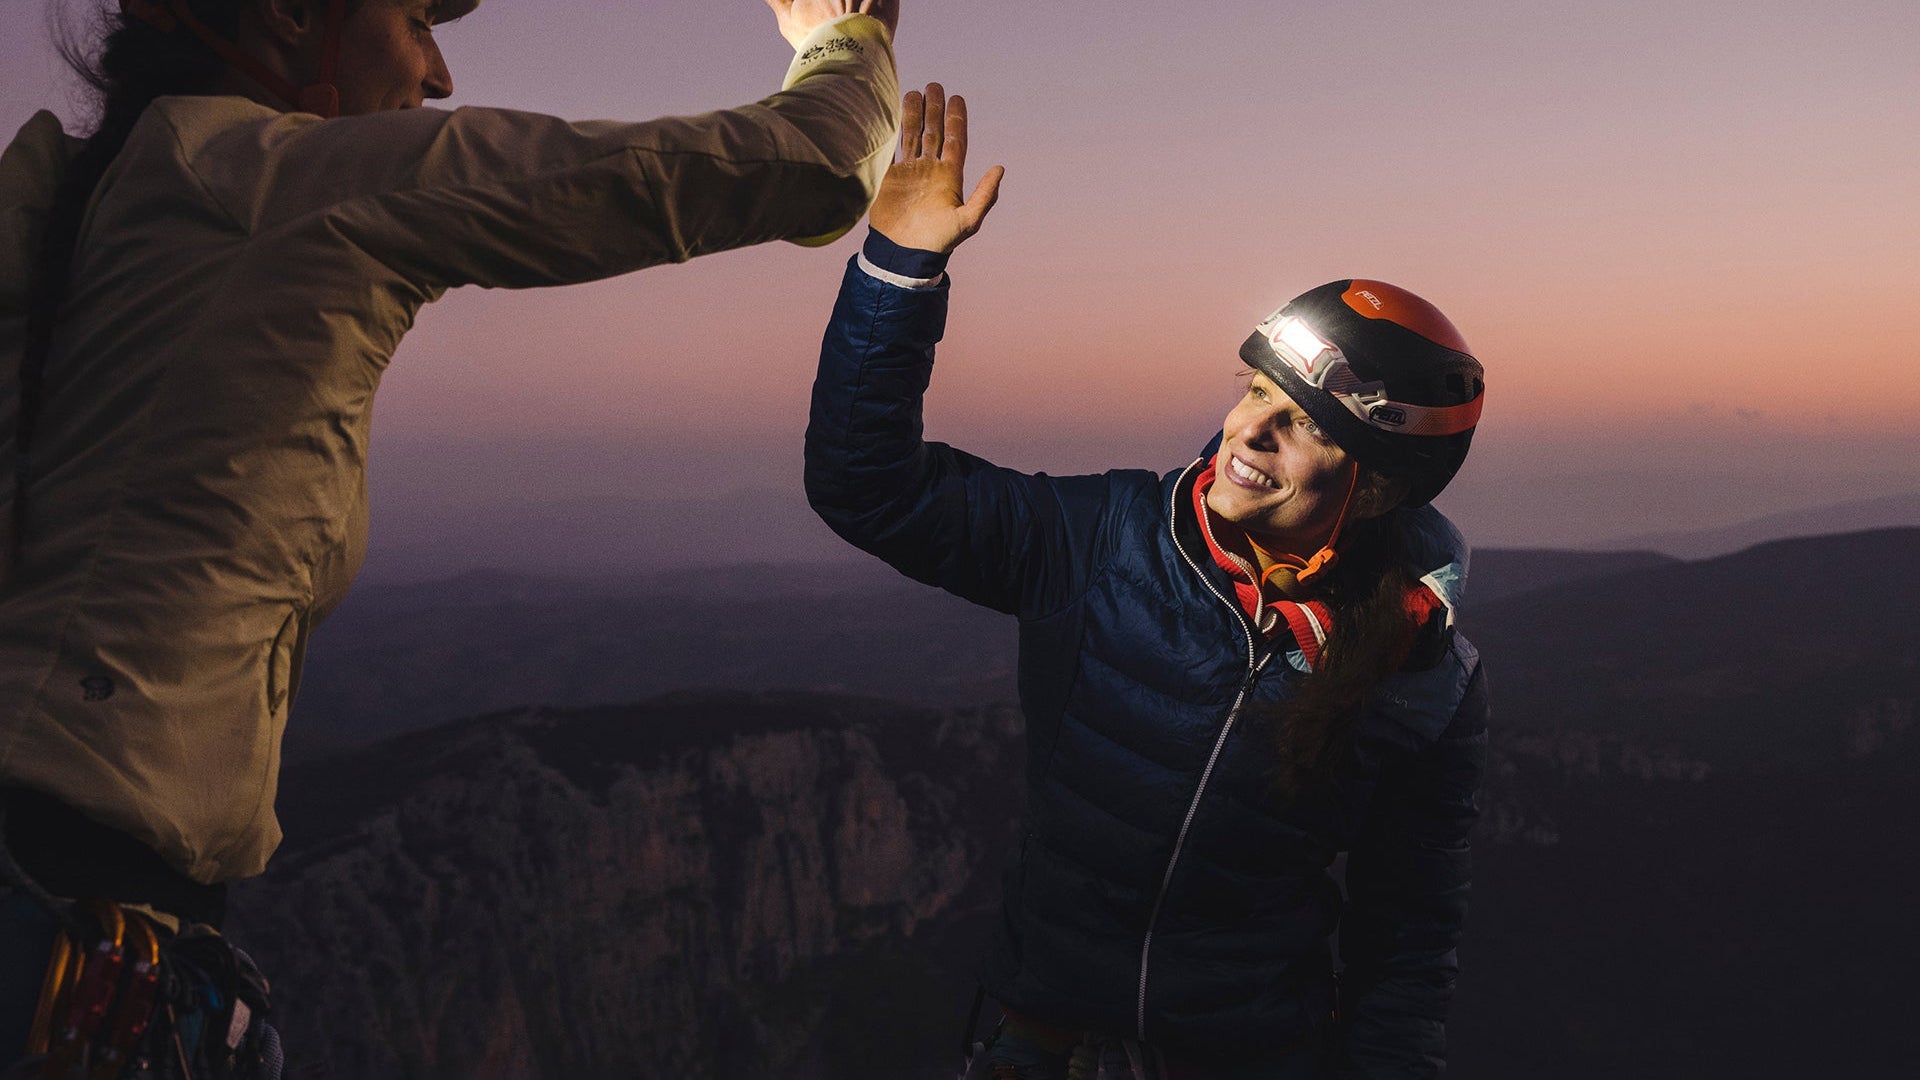 A woman wearing a headlamp high fives her rock climbing partner after summiting